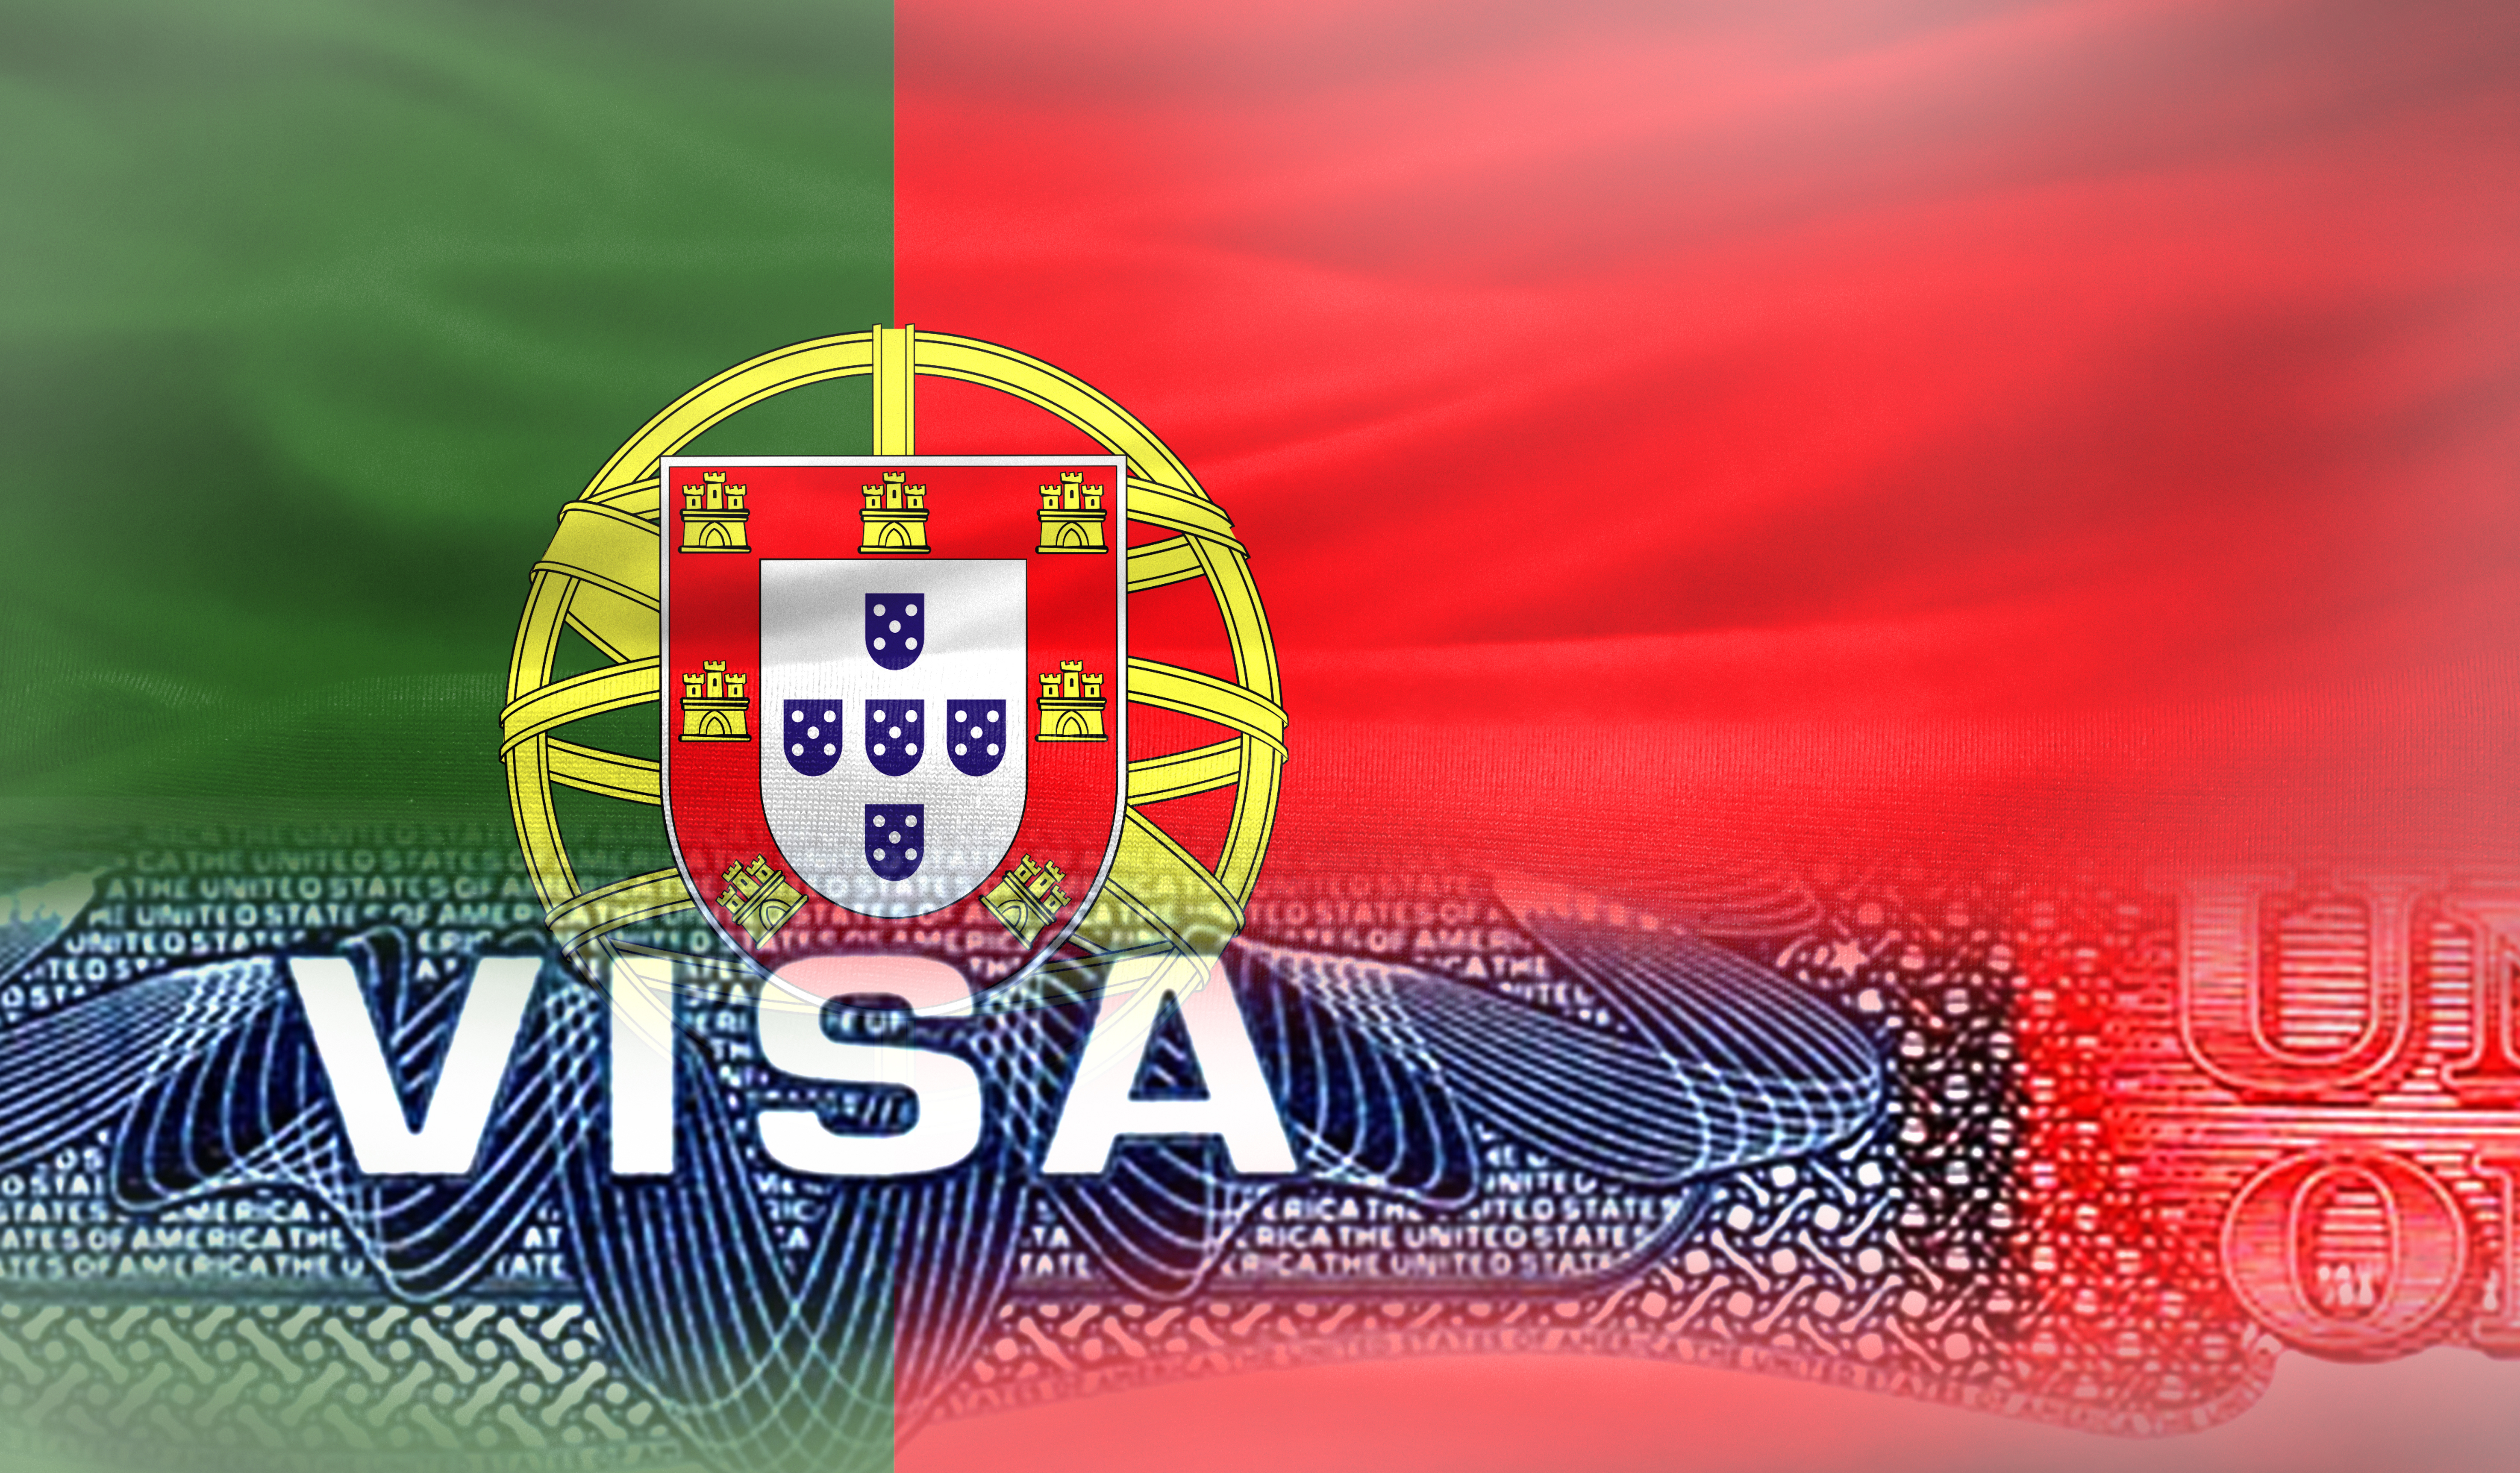 Флаг Португалии, визу в которую могут оформить иностранцы